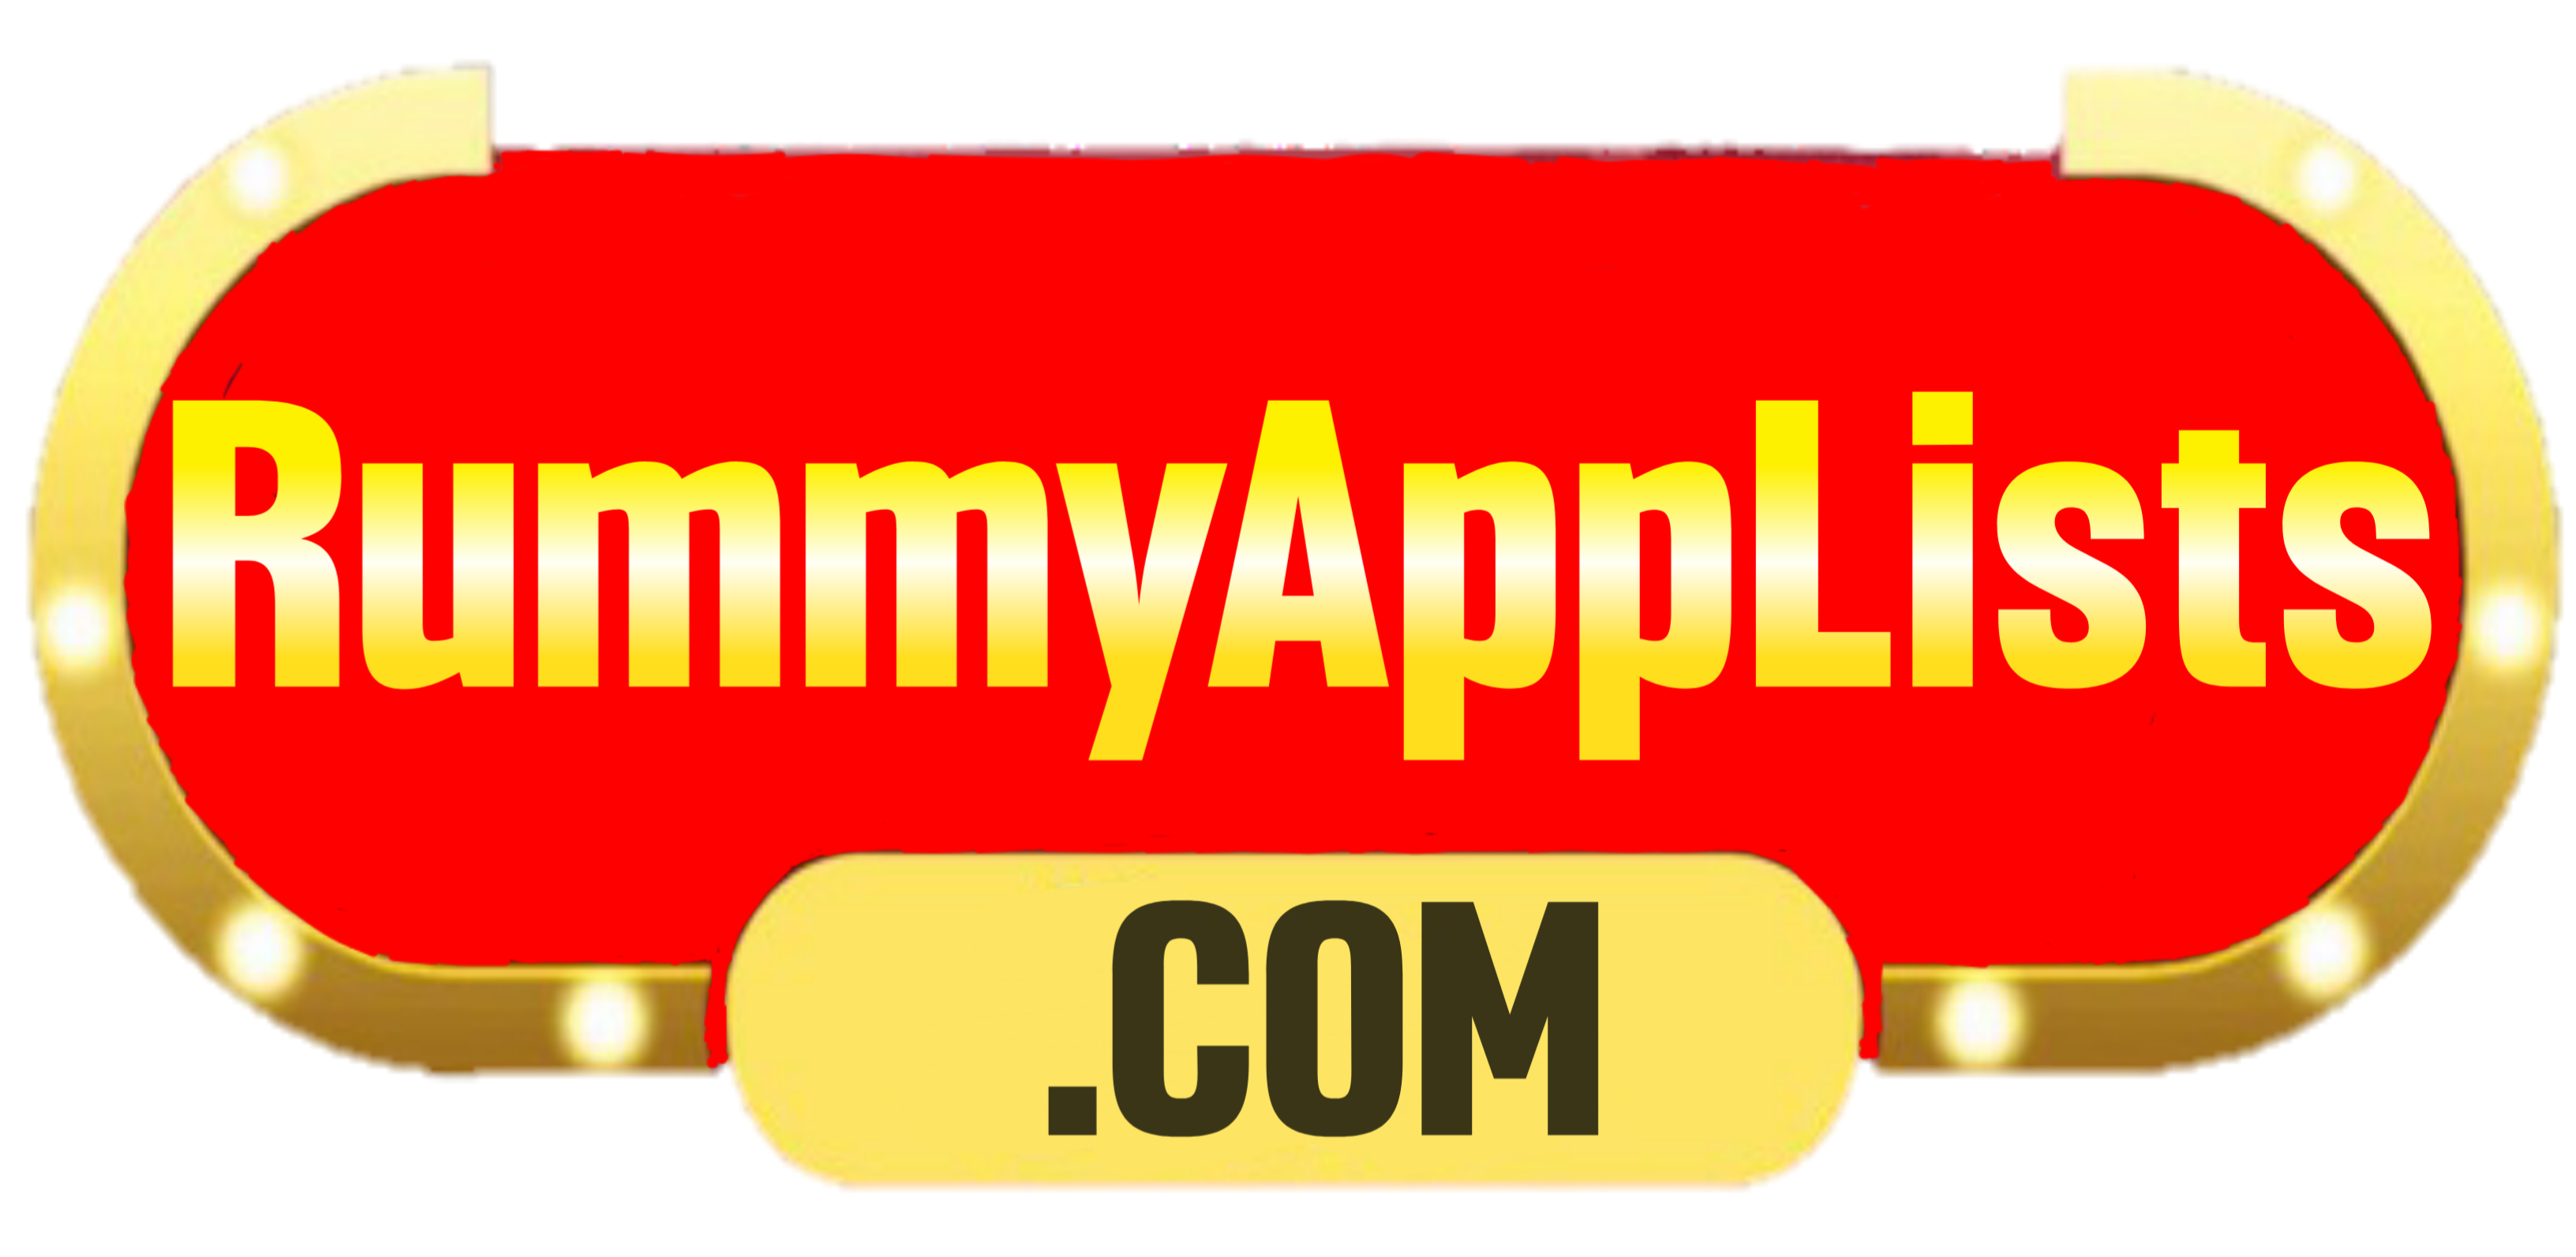 Rummy App Lists : All Rummy Apps List ₹41,₹51,₹75, ₹91, ₹100, ₹500 Bonus | Rummy All App